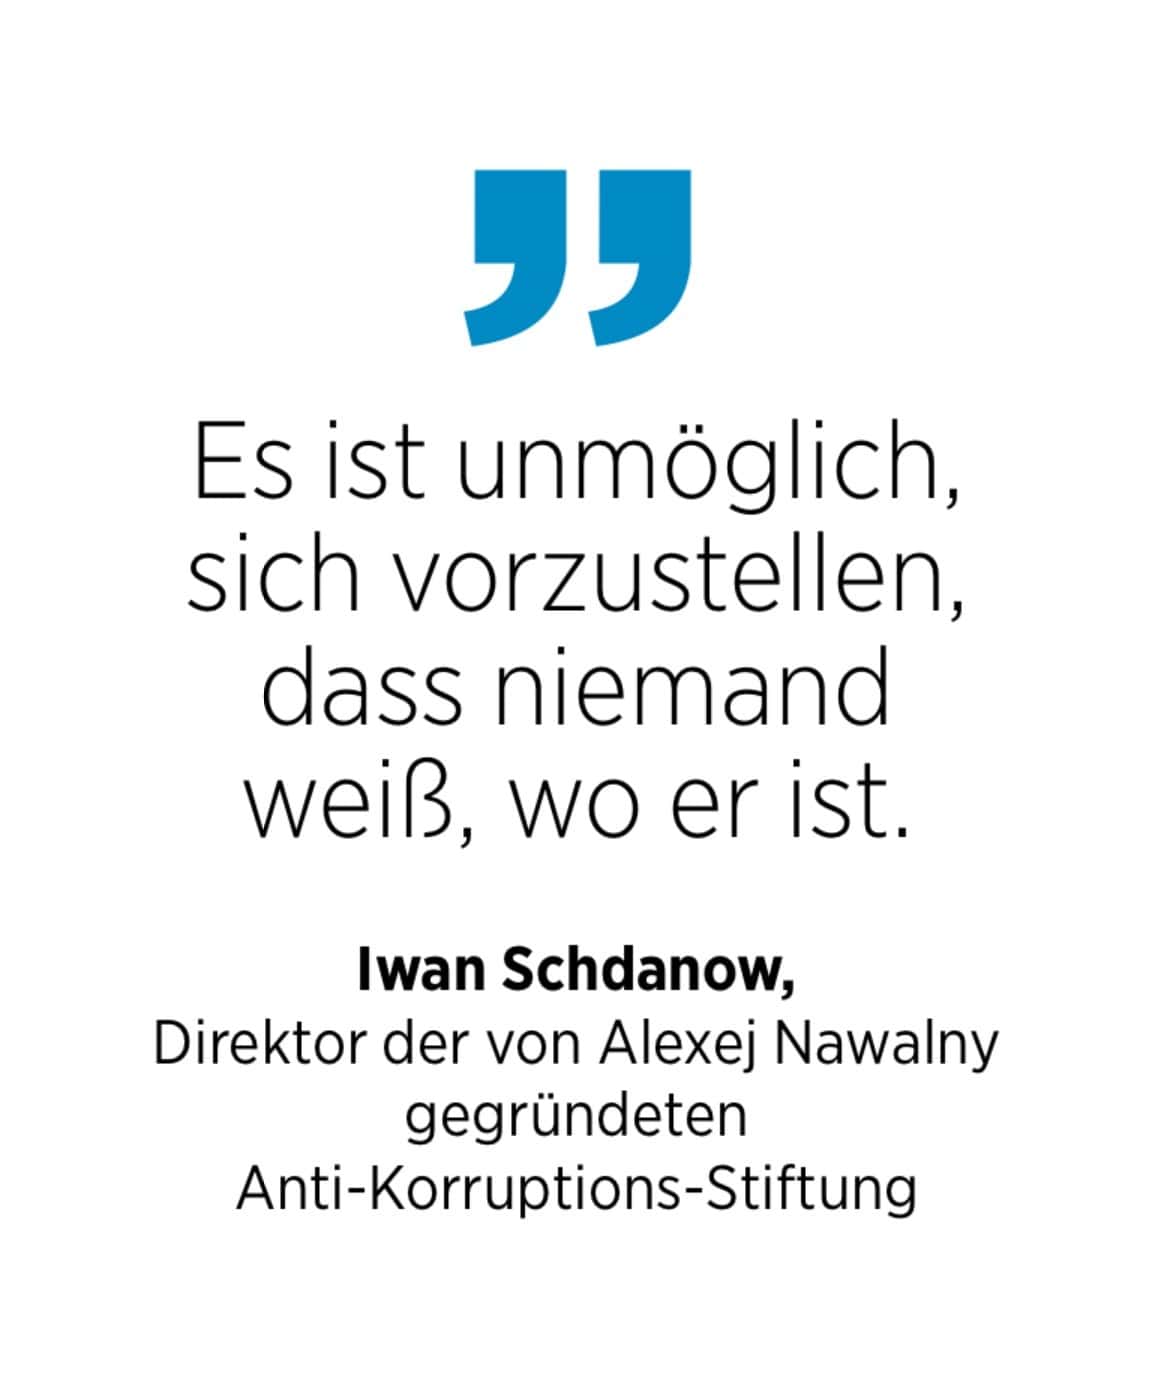 Iwan Schdanow, Direktor der von Alexej Nawalny gegründeten Anti-Korruptions-Stiftung: Es ist unmöglich, sich vorzustellen, dass niemand weiß, wo er ist.